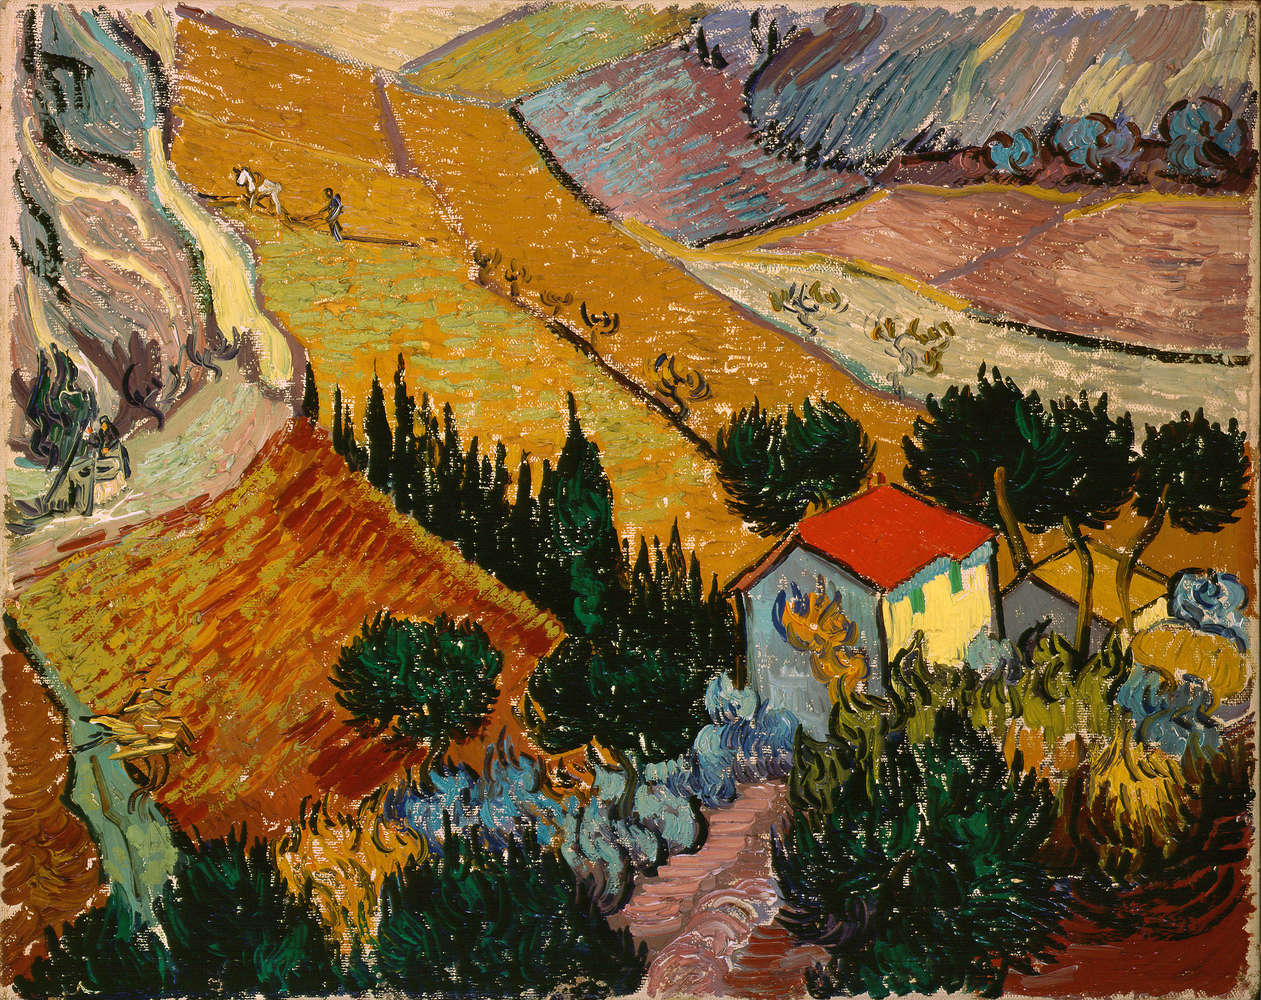             Fototapete "Landschaft mit Haus und Pflüger" von Vincent van Gogh
        